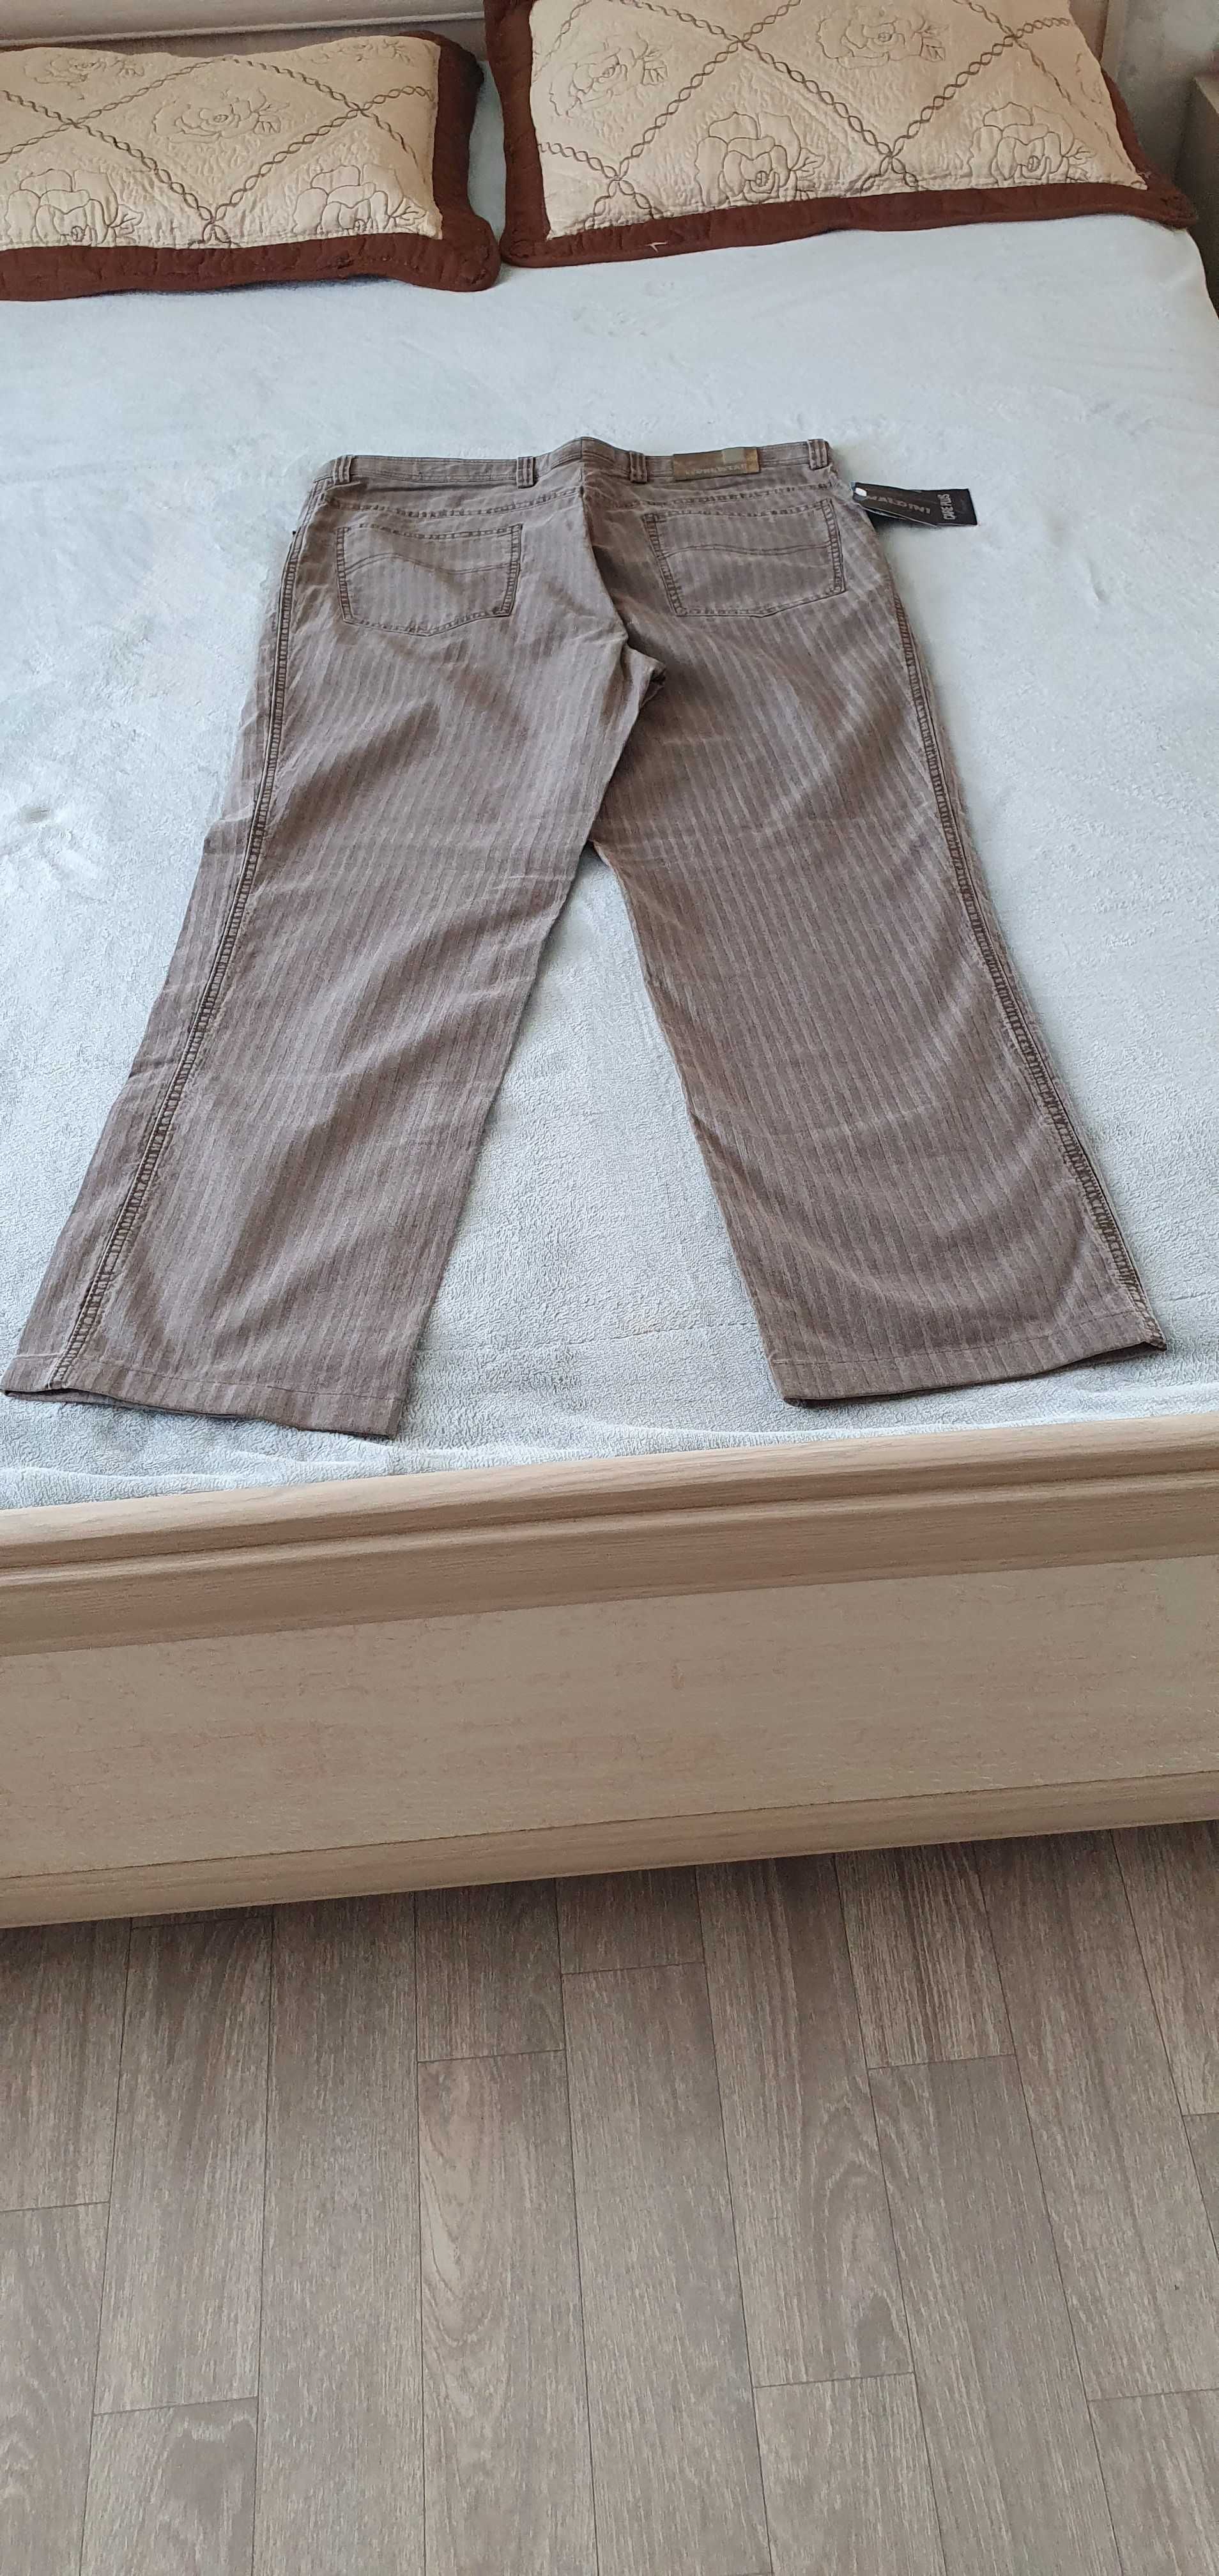 Продам новые мужские джинсы брендовой фирмы (MALDINI). Размер 52